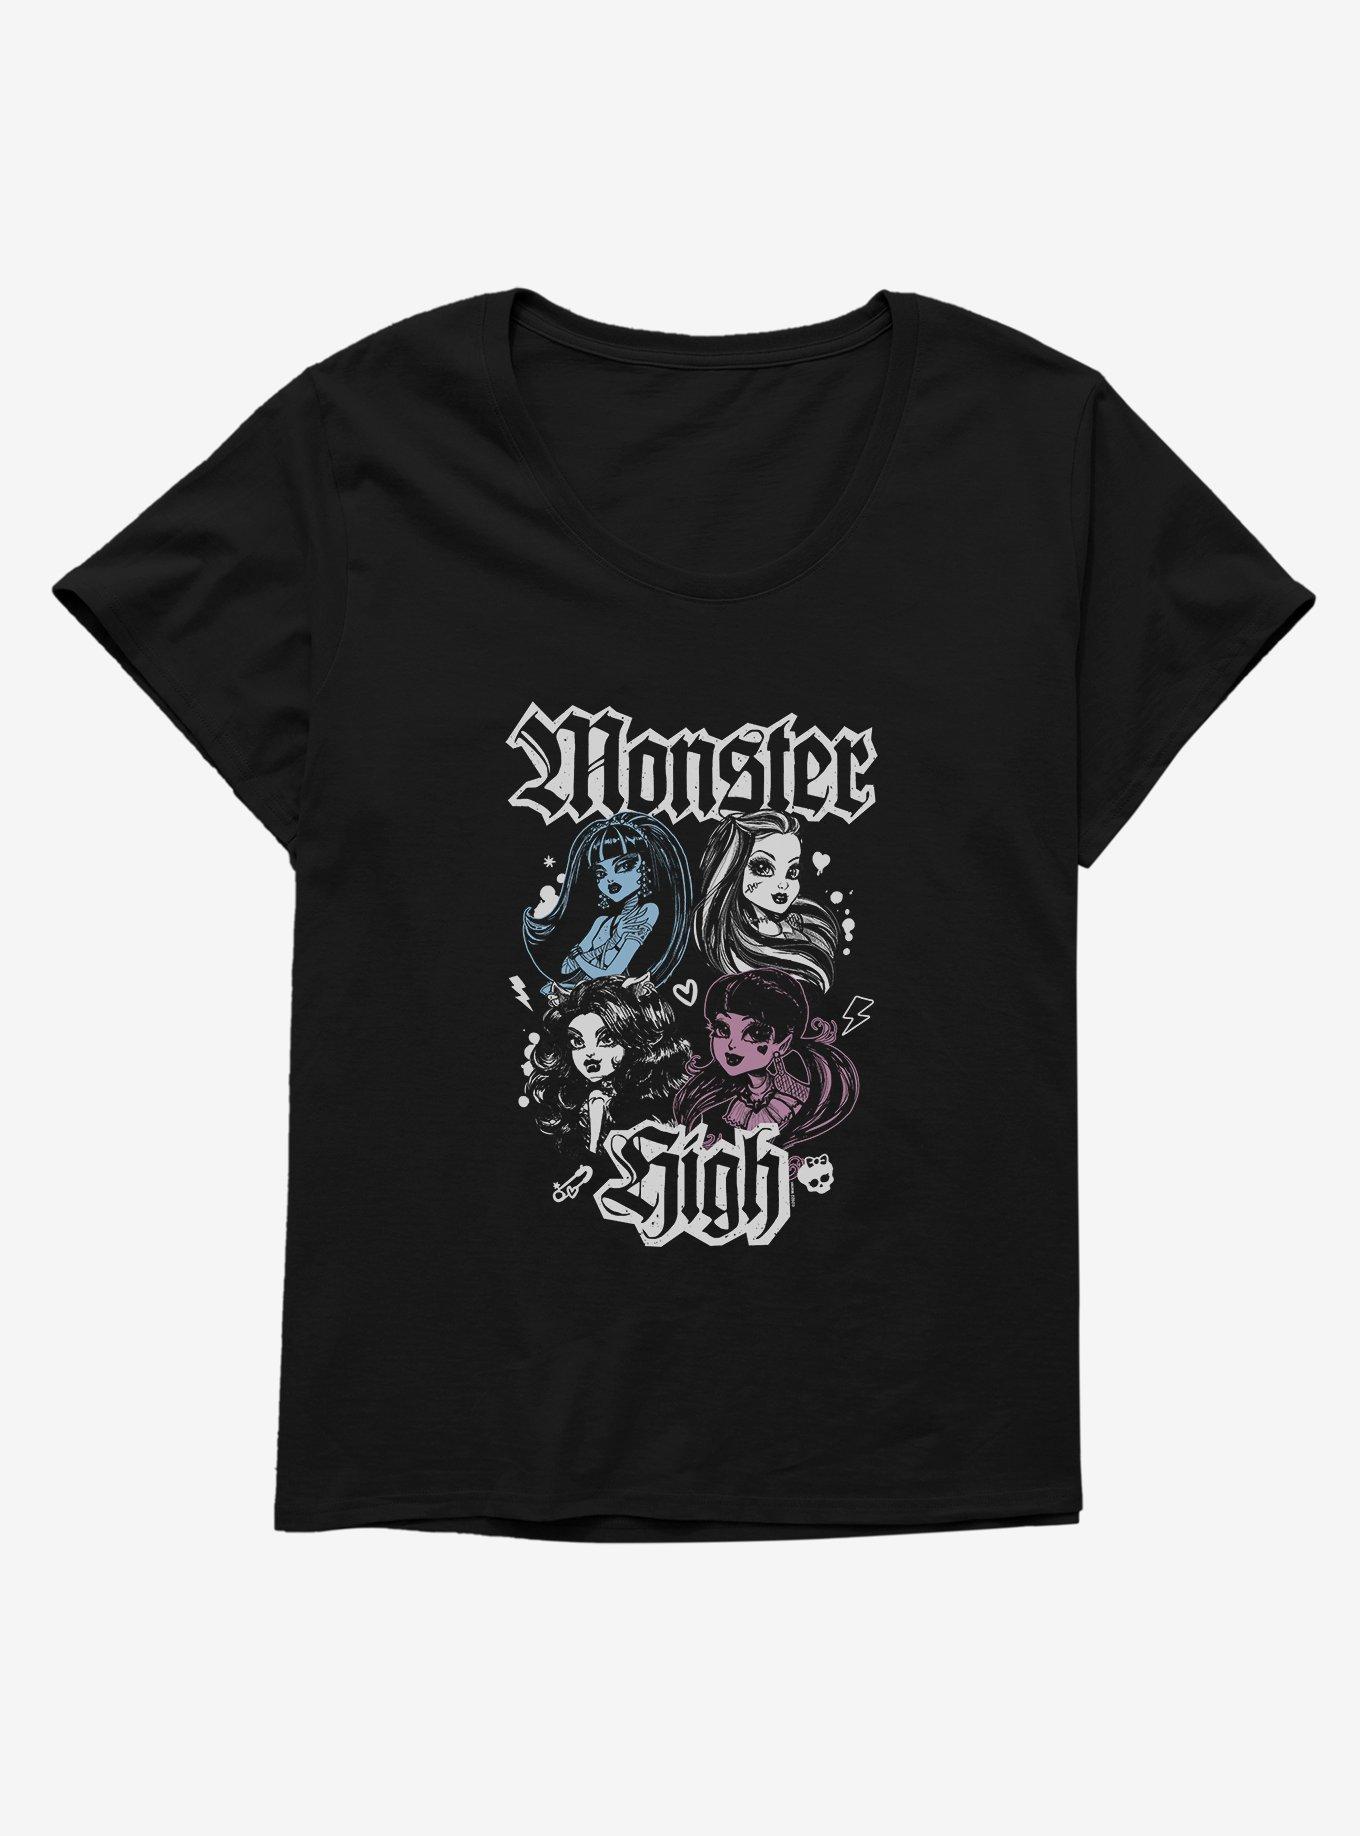 Monster High Team Girls T-Shirt Plus